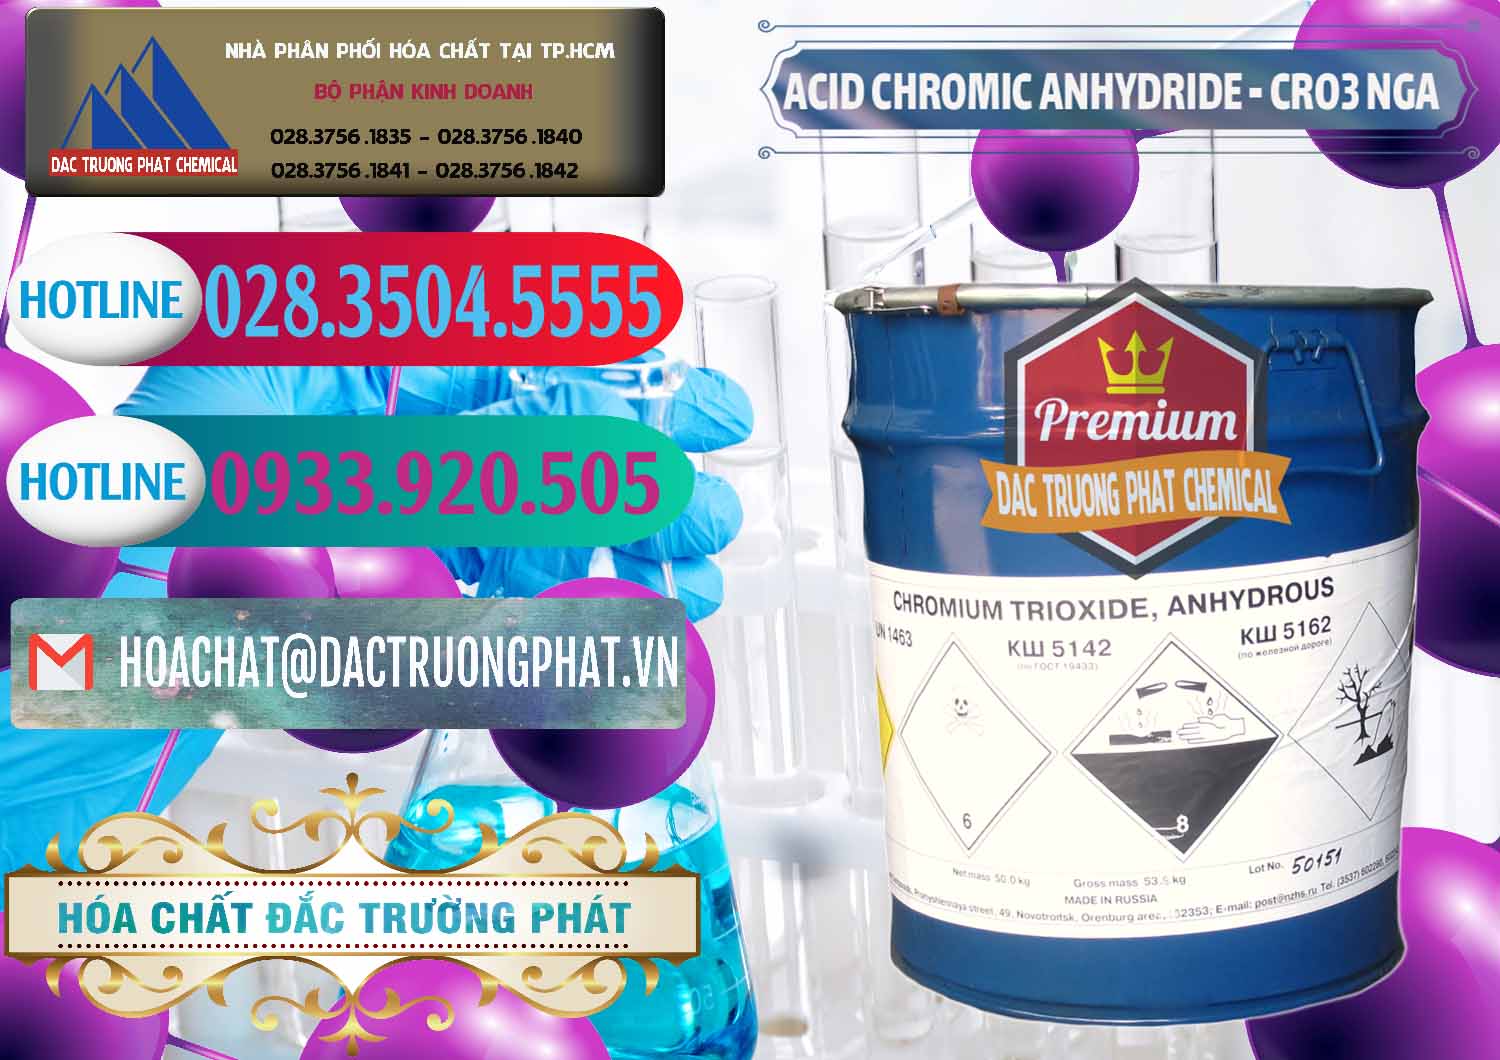 Chuyên cung cấp _ bán Acid Chromic Anhydride - Cromic CRO3 Nga Russia - 0006 - Chuyên phân phối và kinh doanh hóa chất tại TP.HCM - truongphat.vn